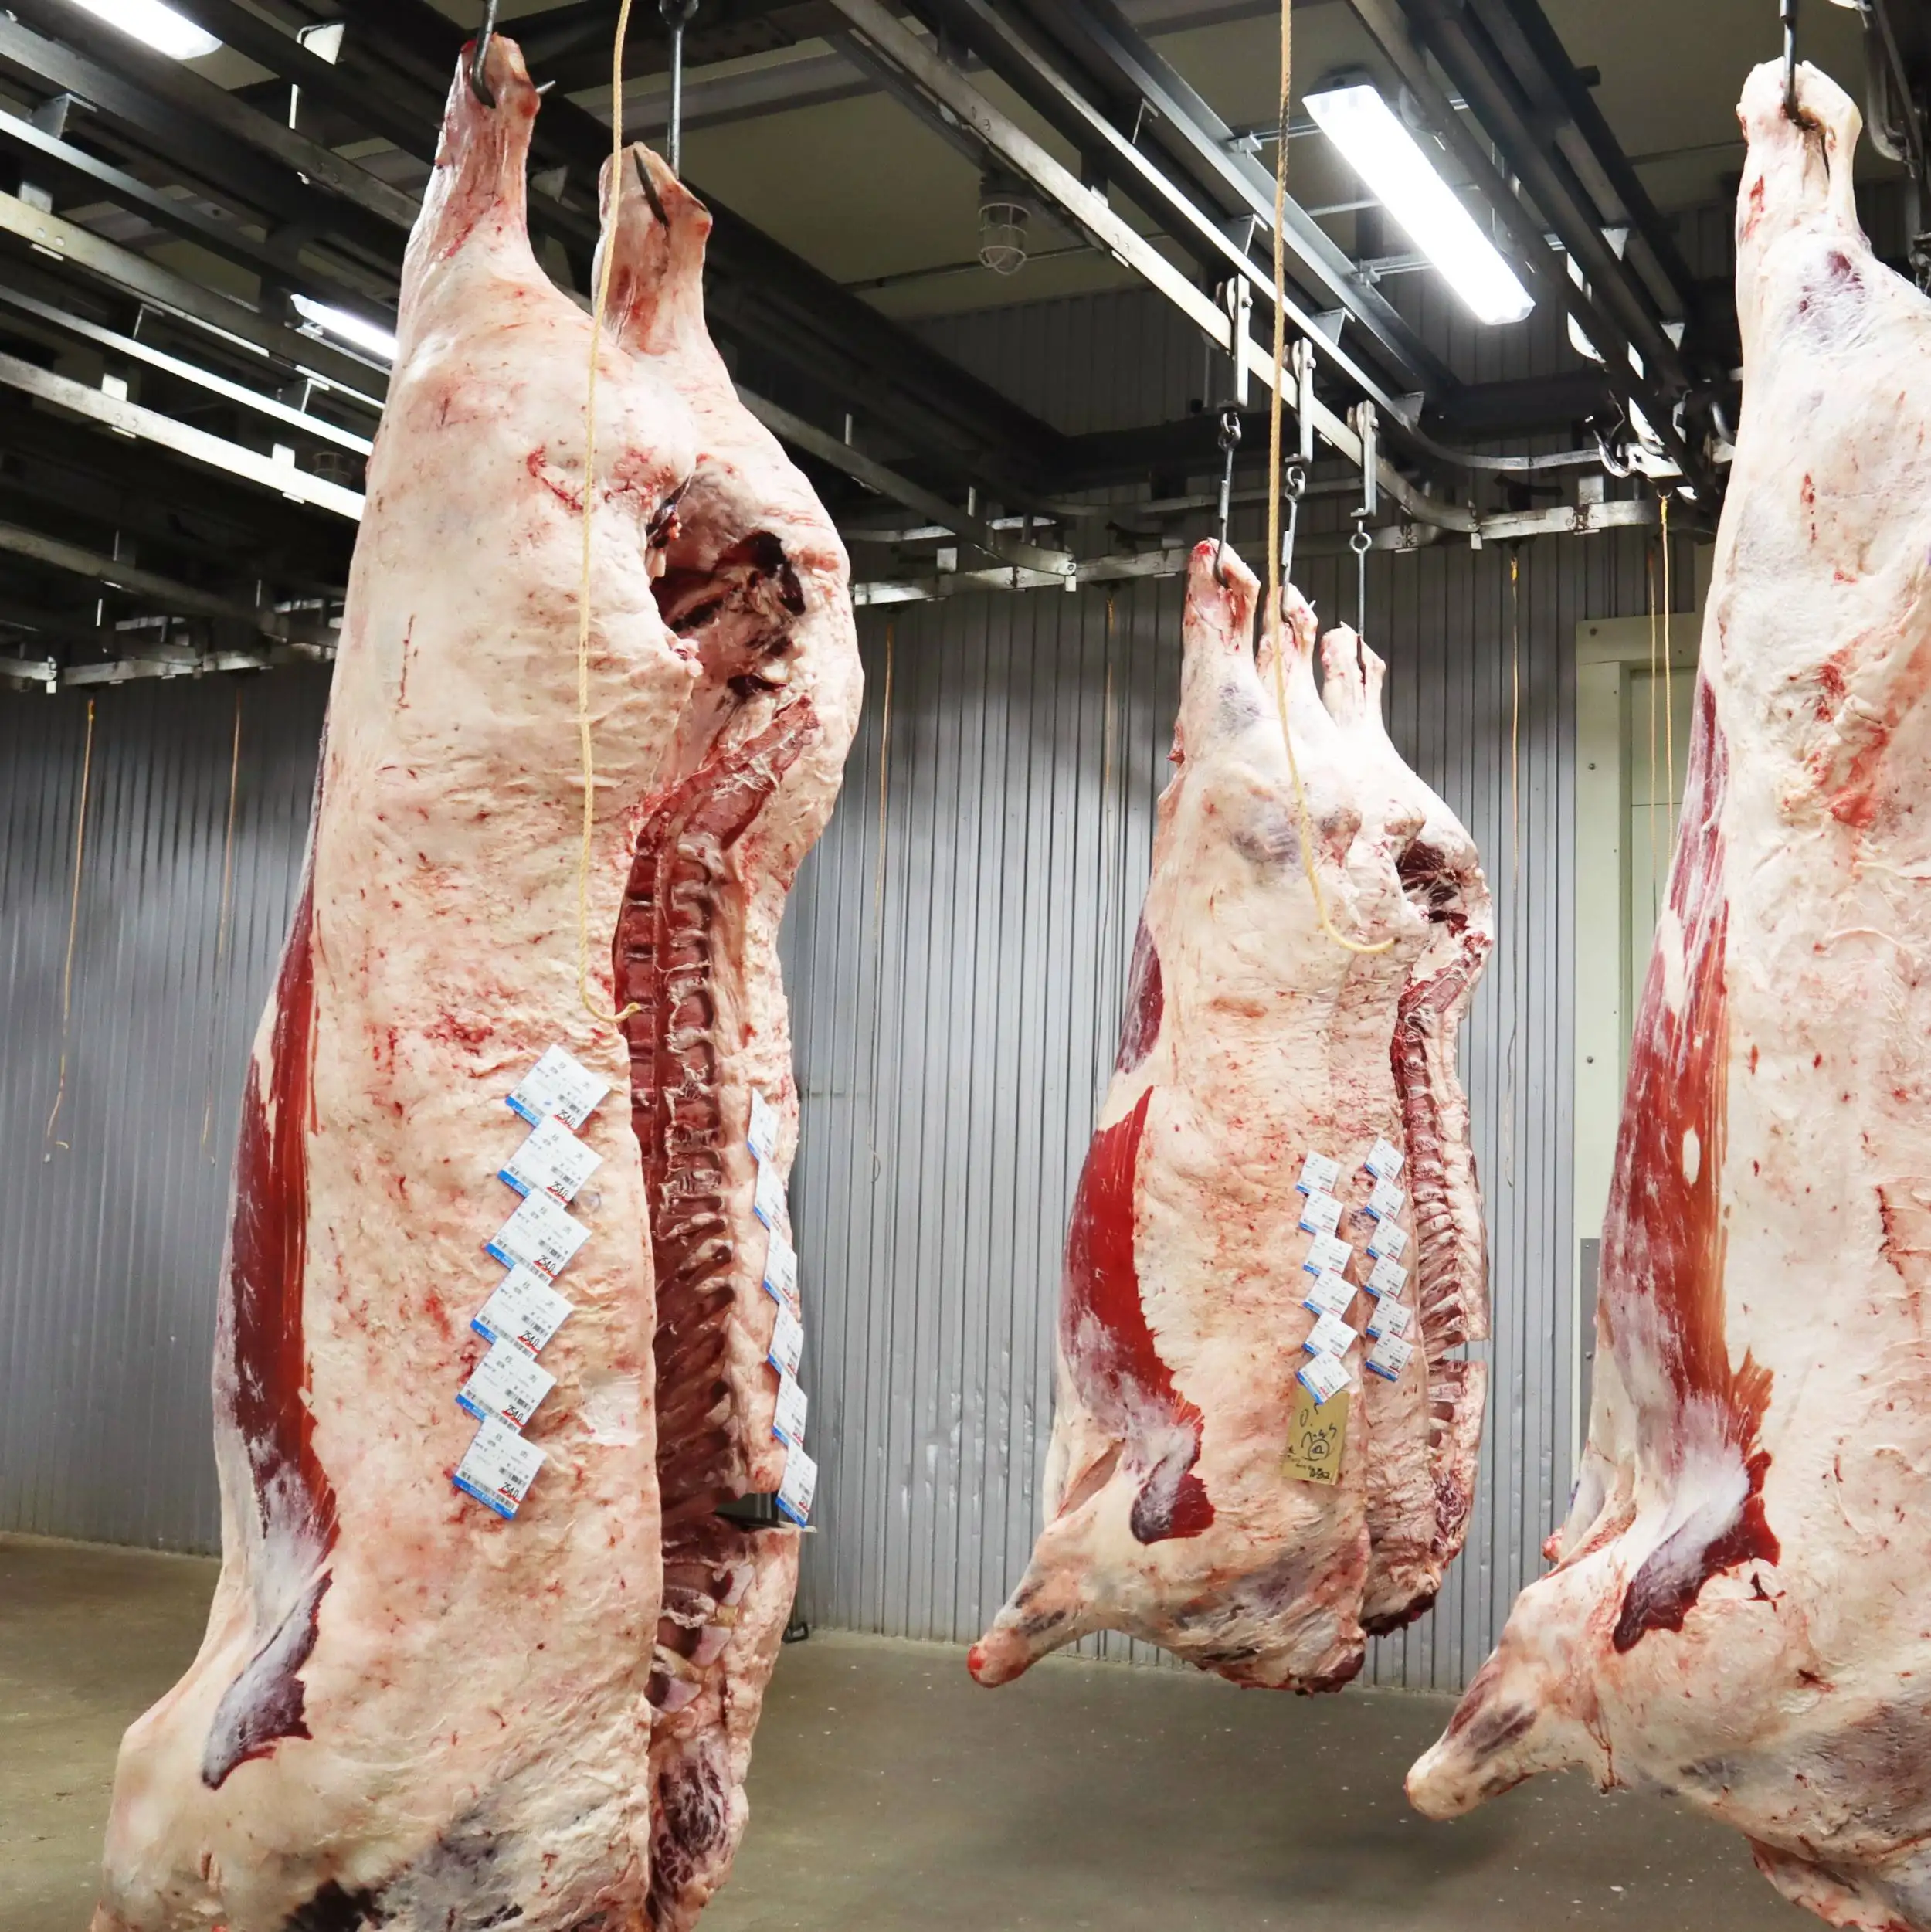 Esportazione di buona qualità Giapponese wagyu congelati set completo della mucca a base di carne fresca